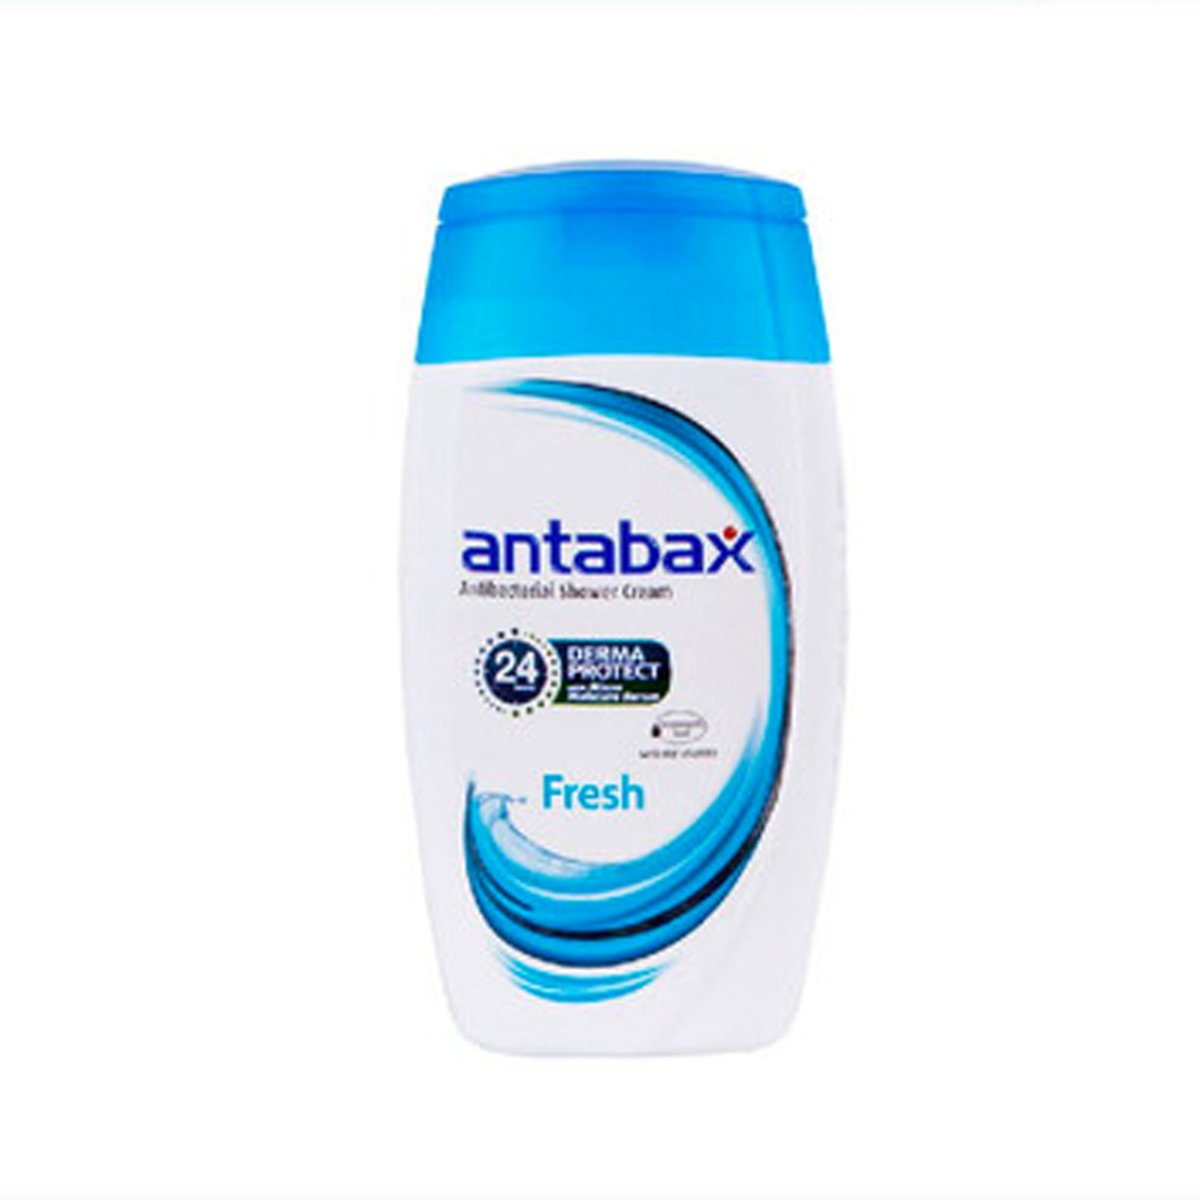 Antabax Shower Cream Fresh 250ml